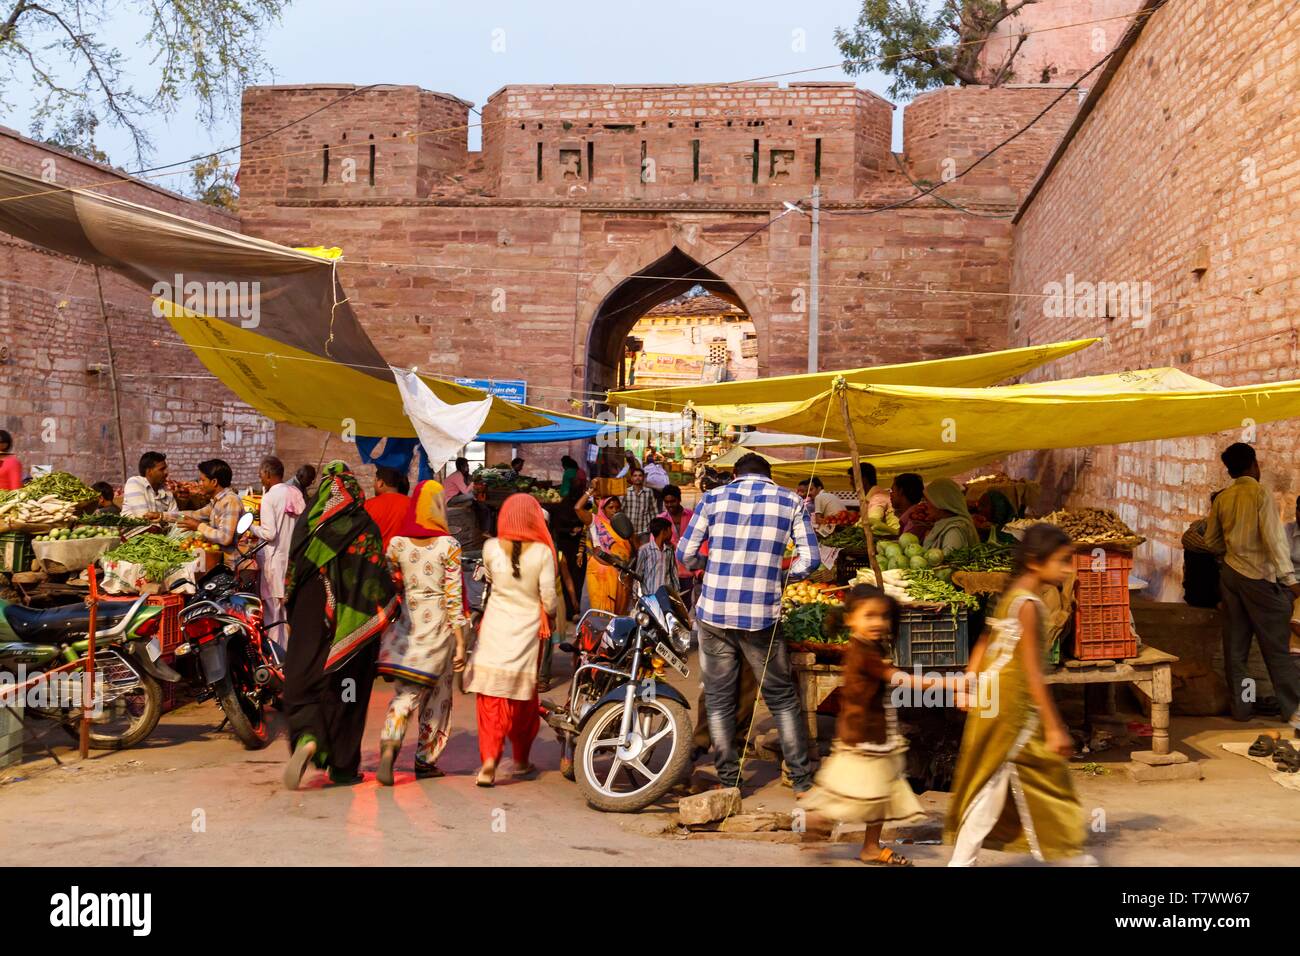 India, Madhya Pradesh, Chanderi, market before one of the town gate Stock Photo